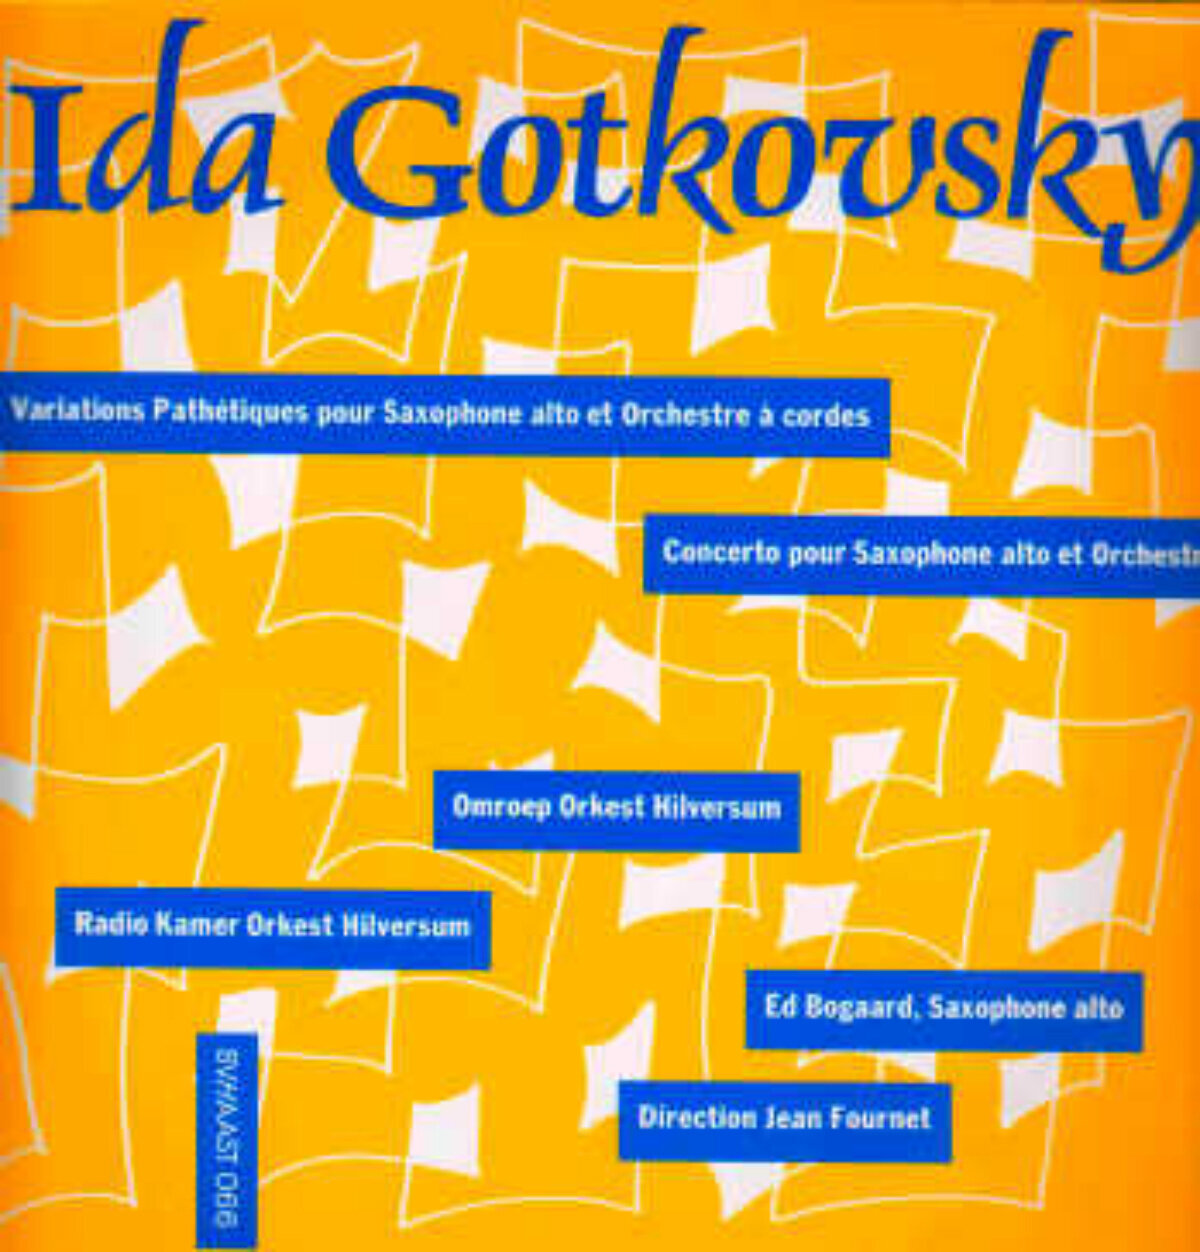 Disque vinyle Ida Gotkovsky Variations Pathétiques (12'' LP)